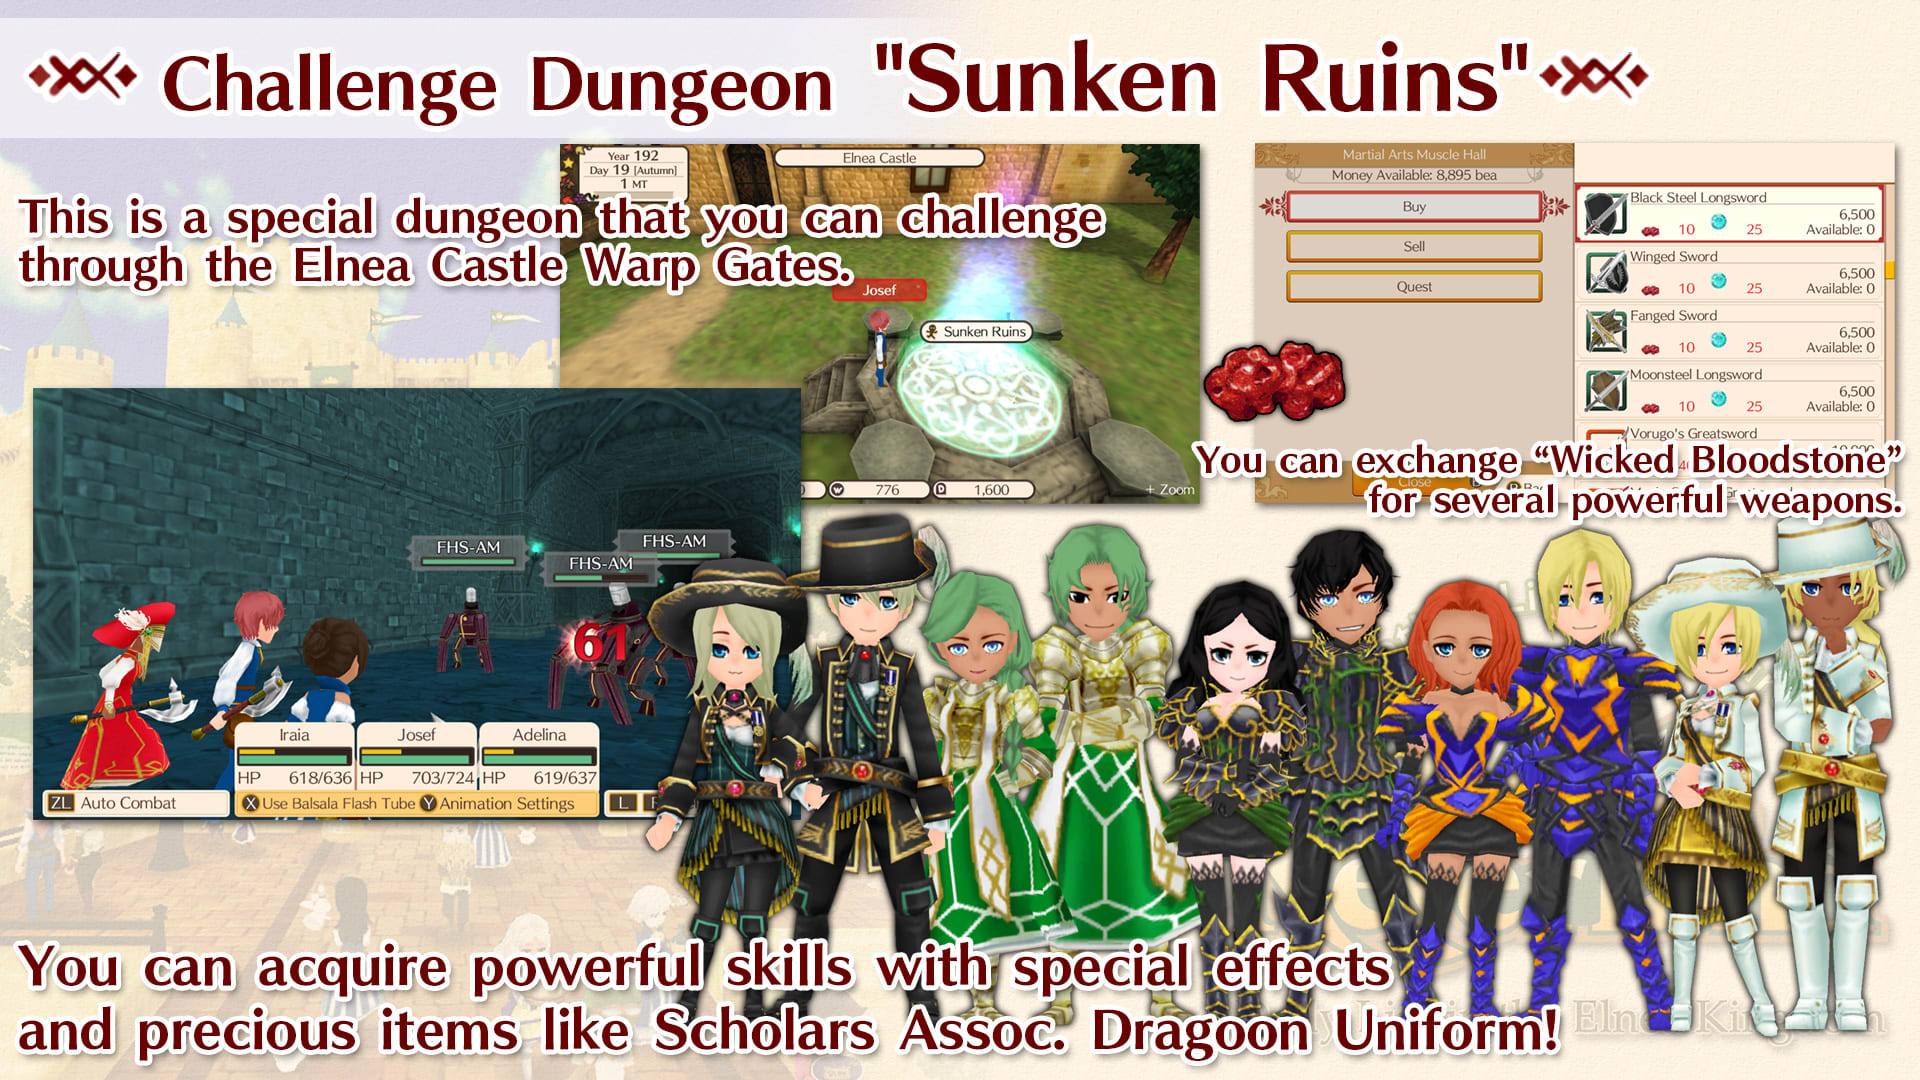 Challenge Dungeon "Sunken Ruins"